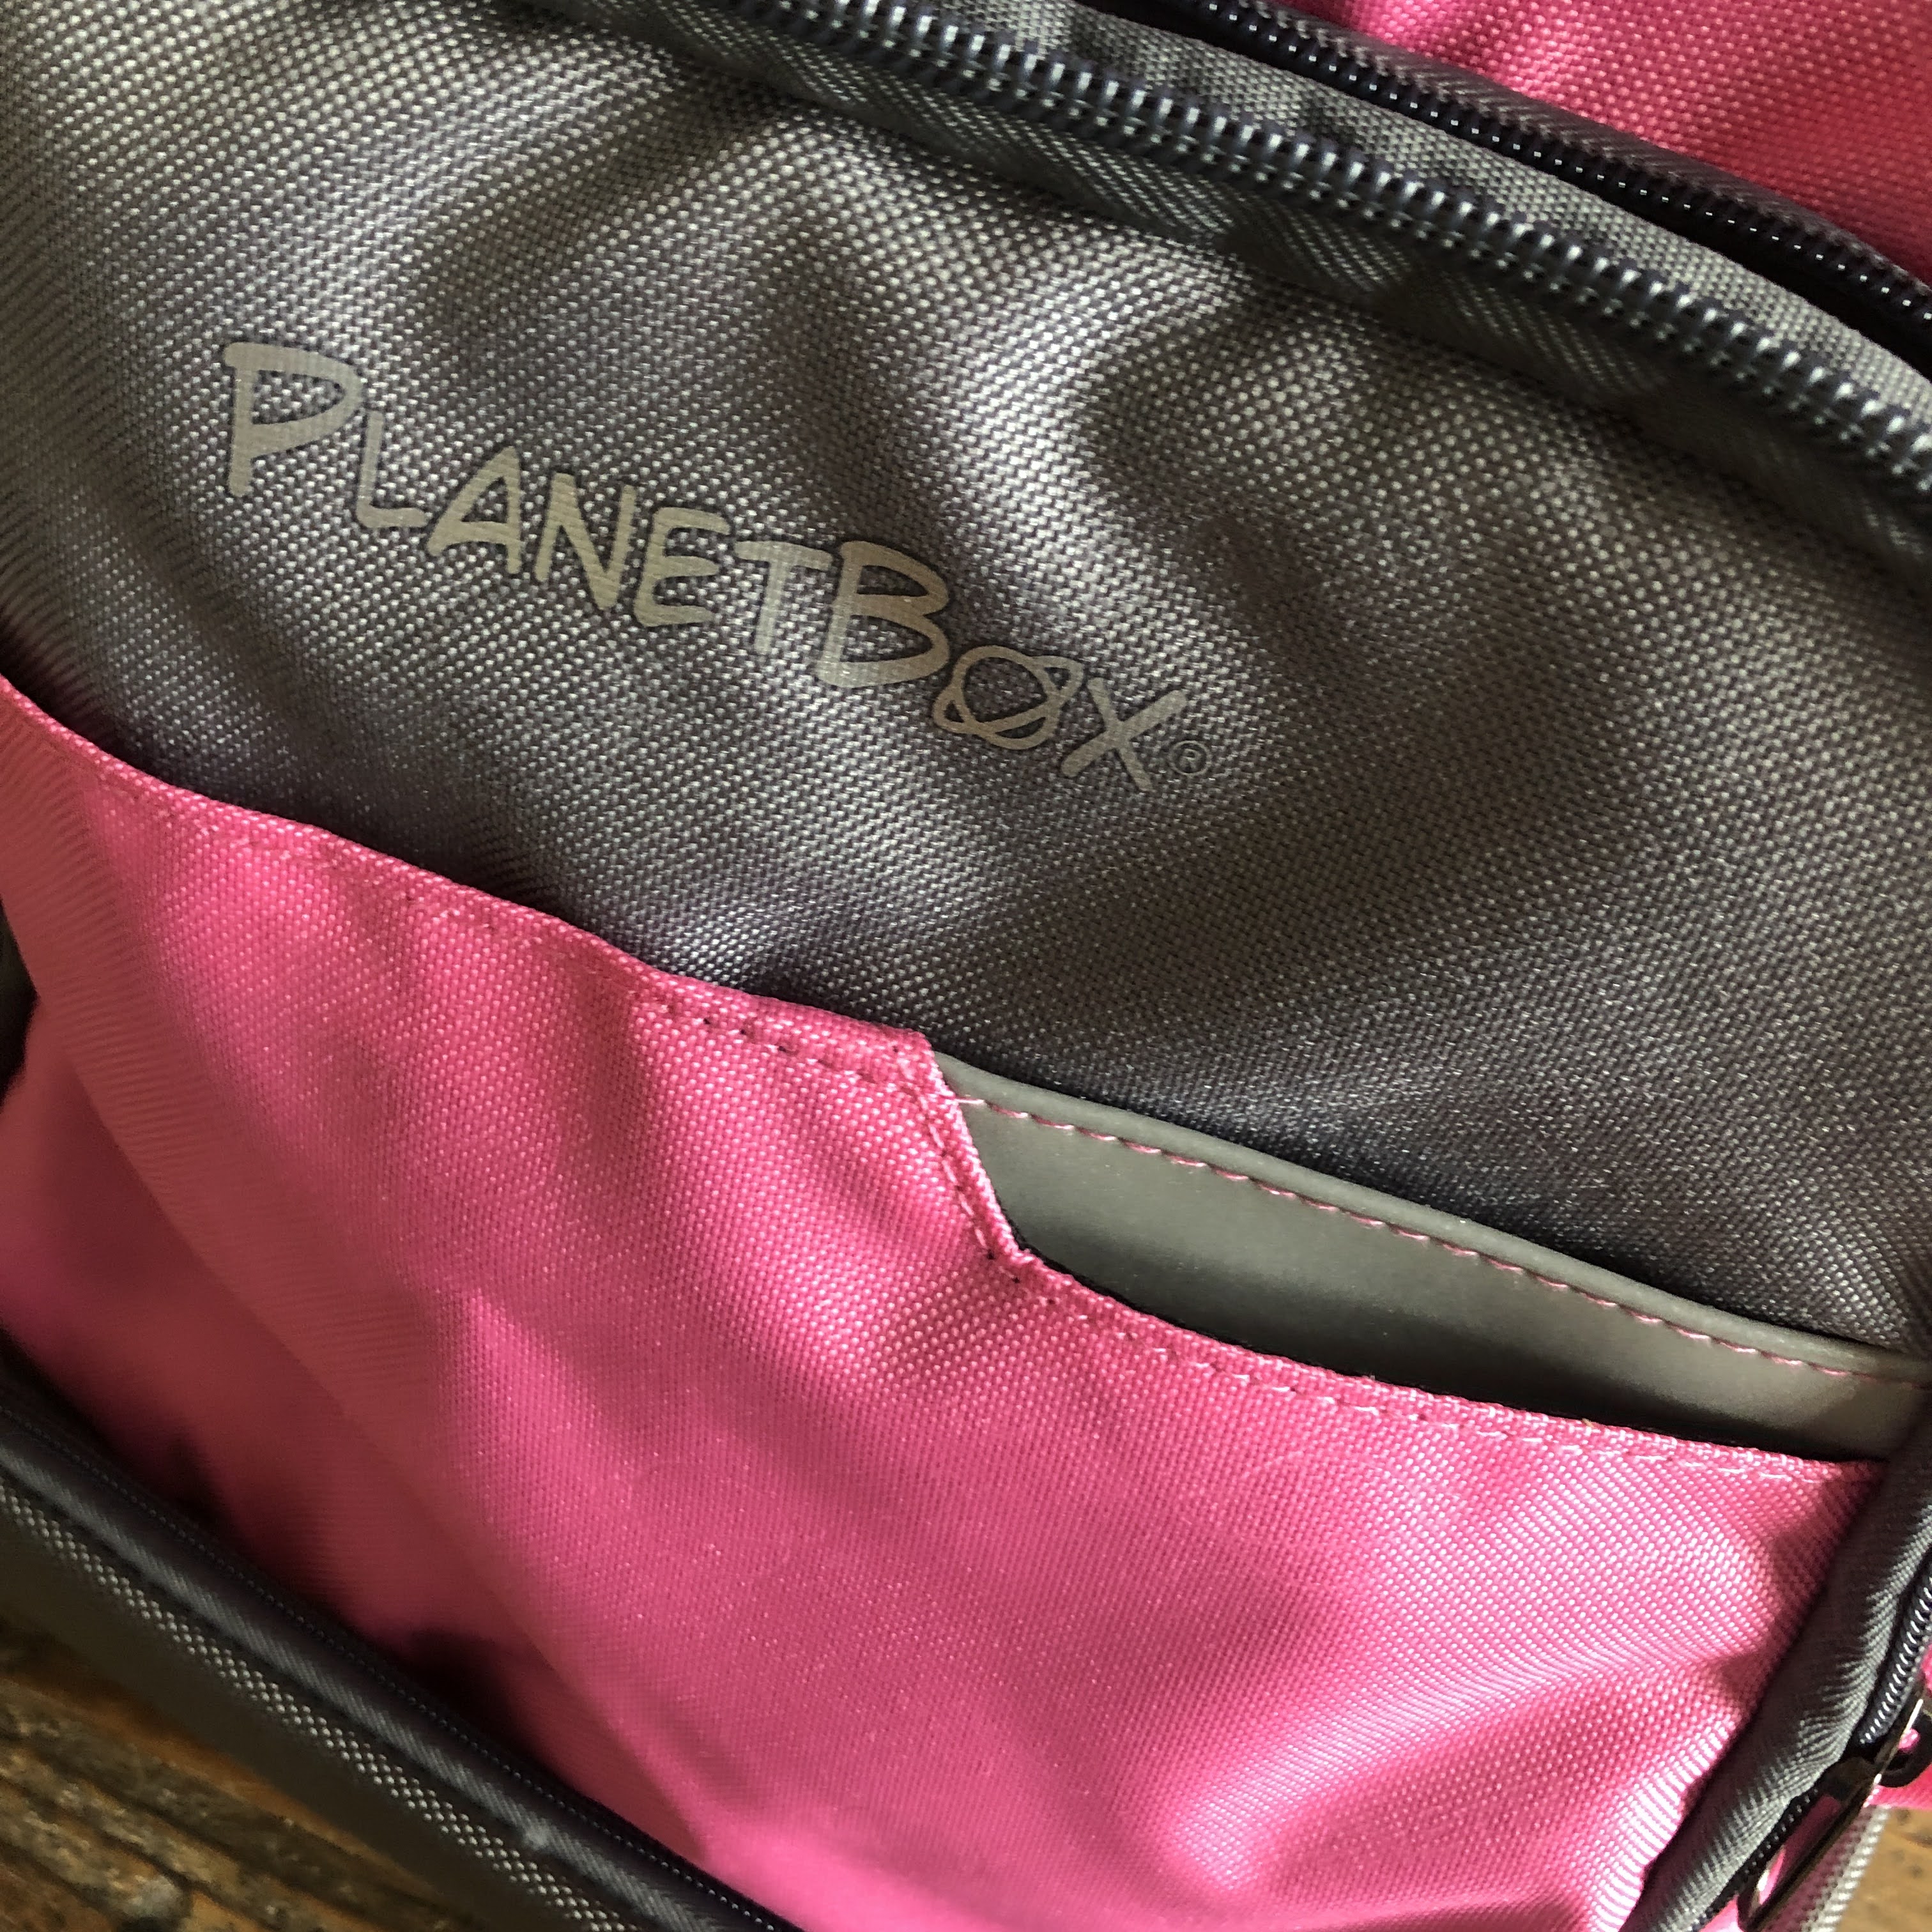 PlanetBox: tolle Bento Dosen, durchdachtes Zubehör und klasse Ranzen!